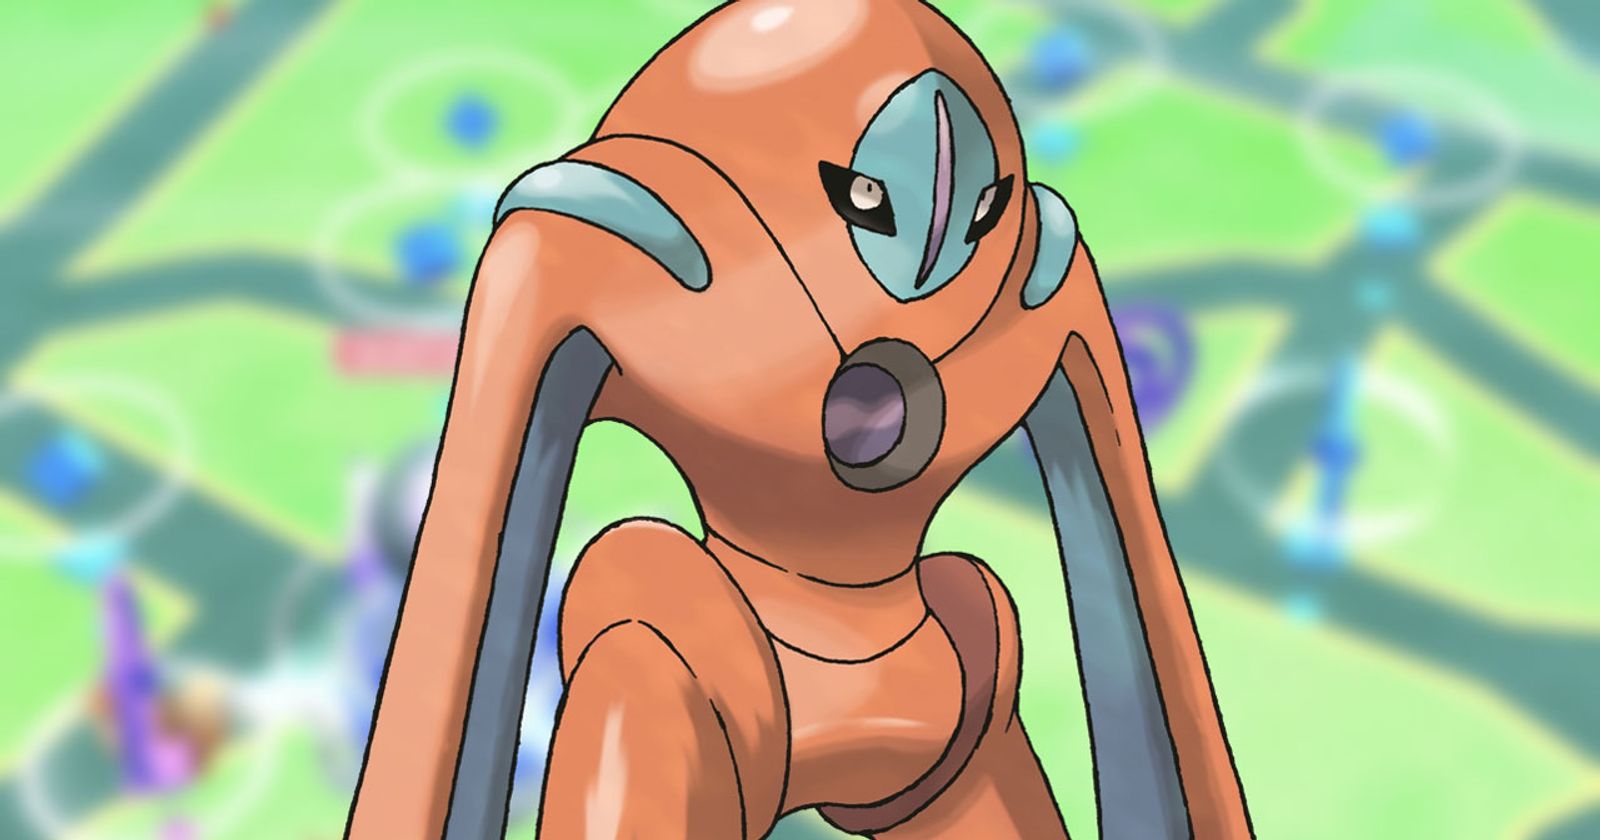 Deoxys Raid Hour: Last Chance To Catch Shiny Deoxys In Pokémon GO